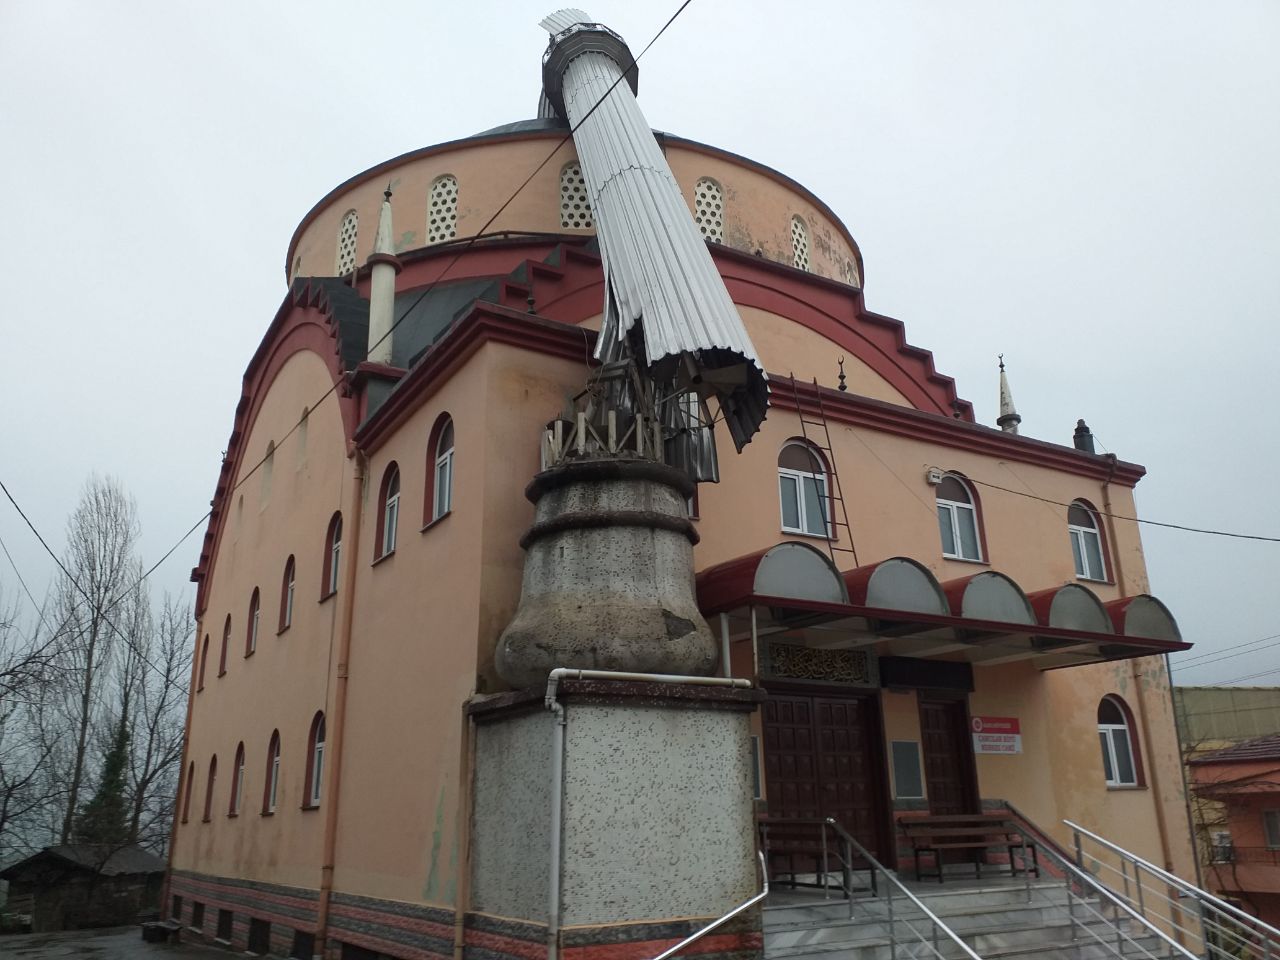 Şiddetli rüzgar nedeniyle köy camisinin minaresi devrildi